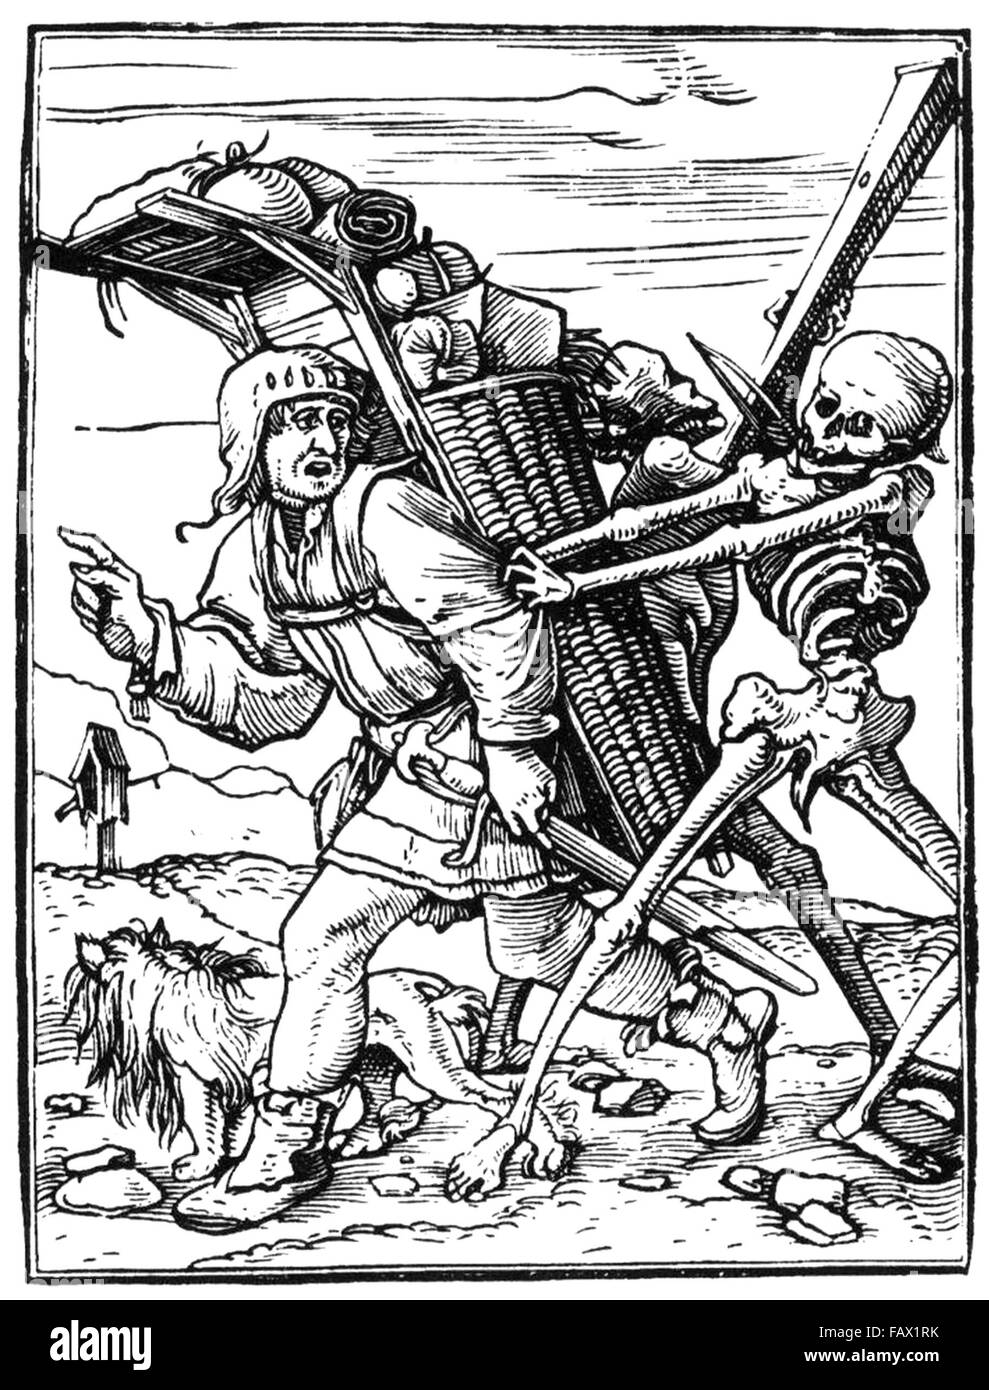 HANS HOLBEIN der jüngere (1497-1543 c) Holzschnitt von The Peddler aus seiner 1538-Dance of Death-Serie Stockfoto